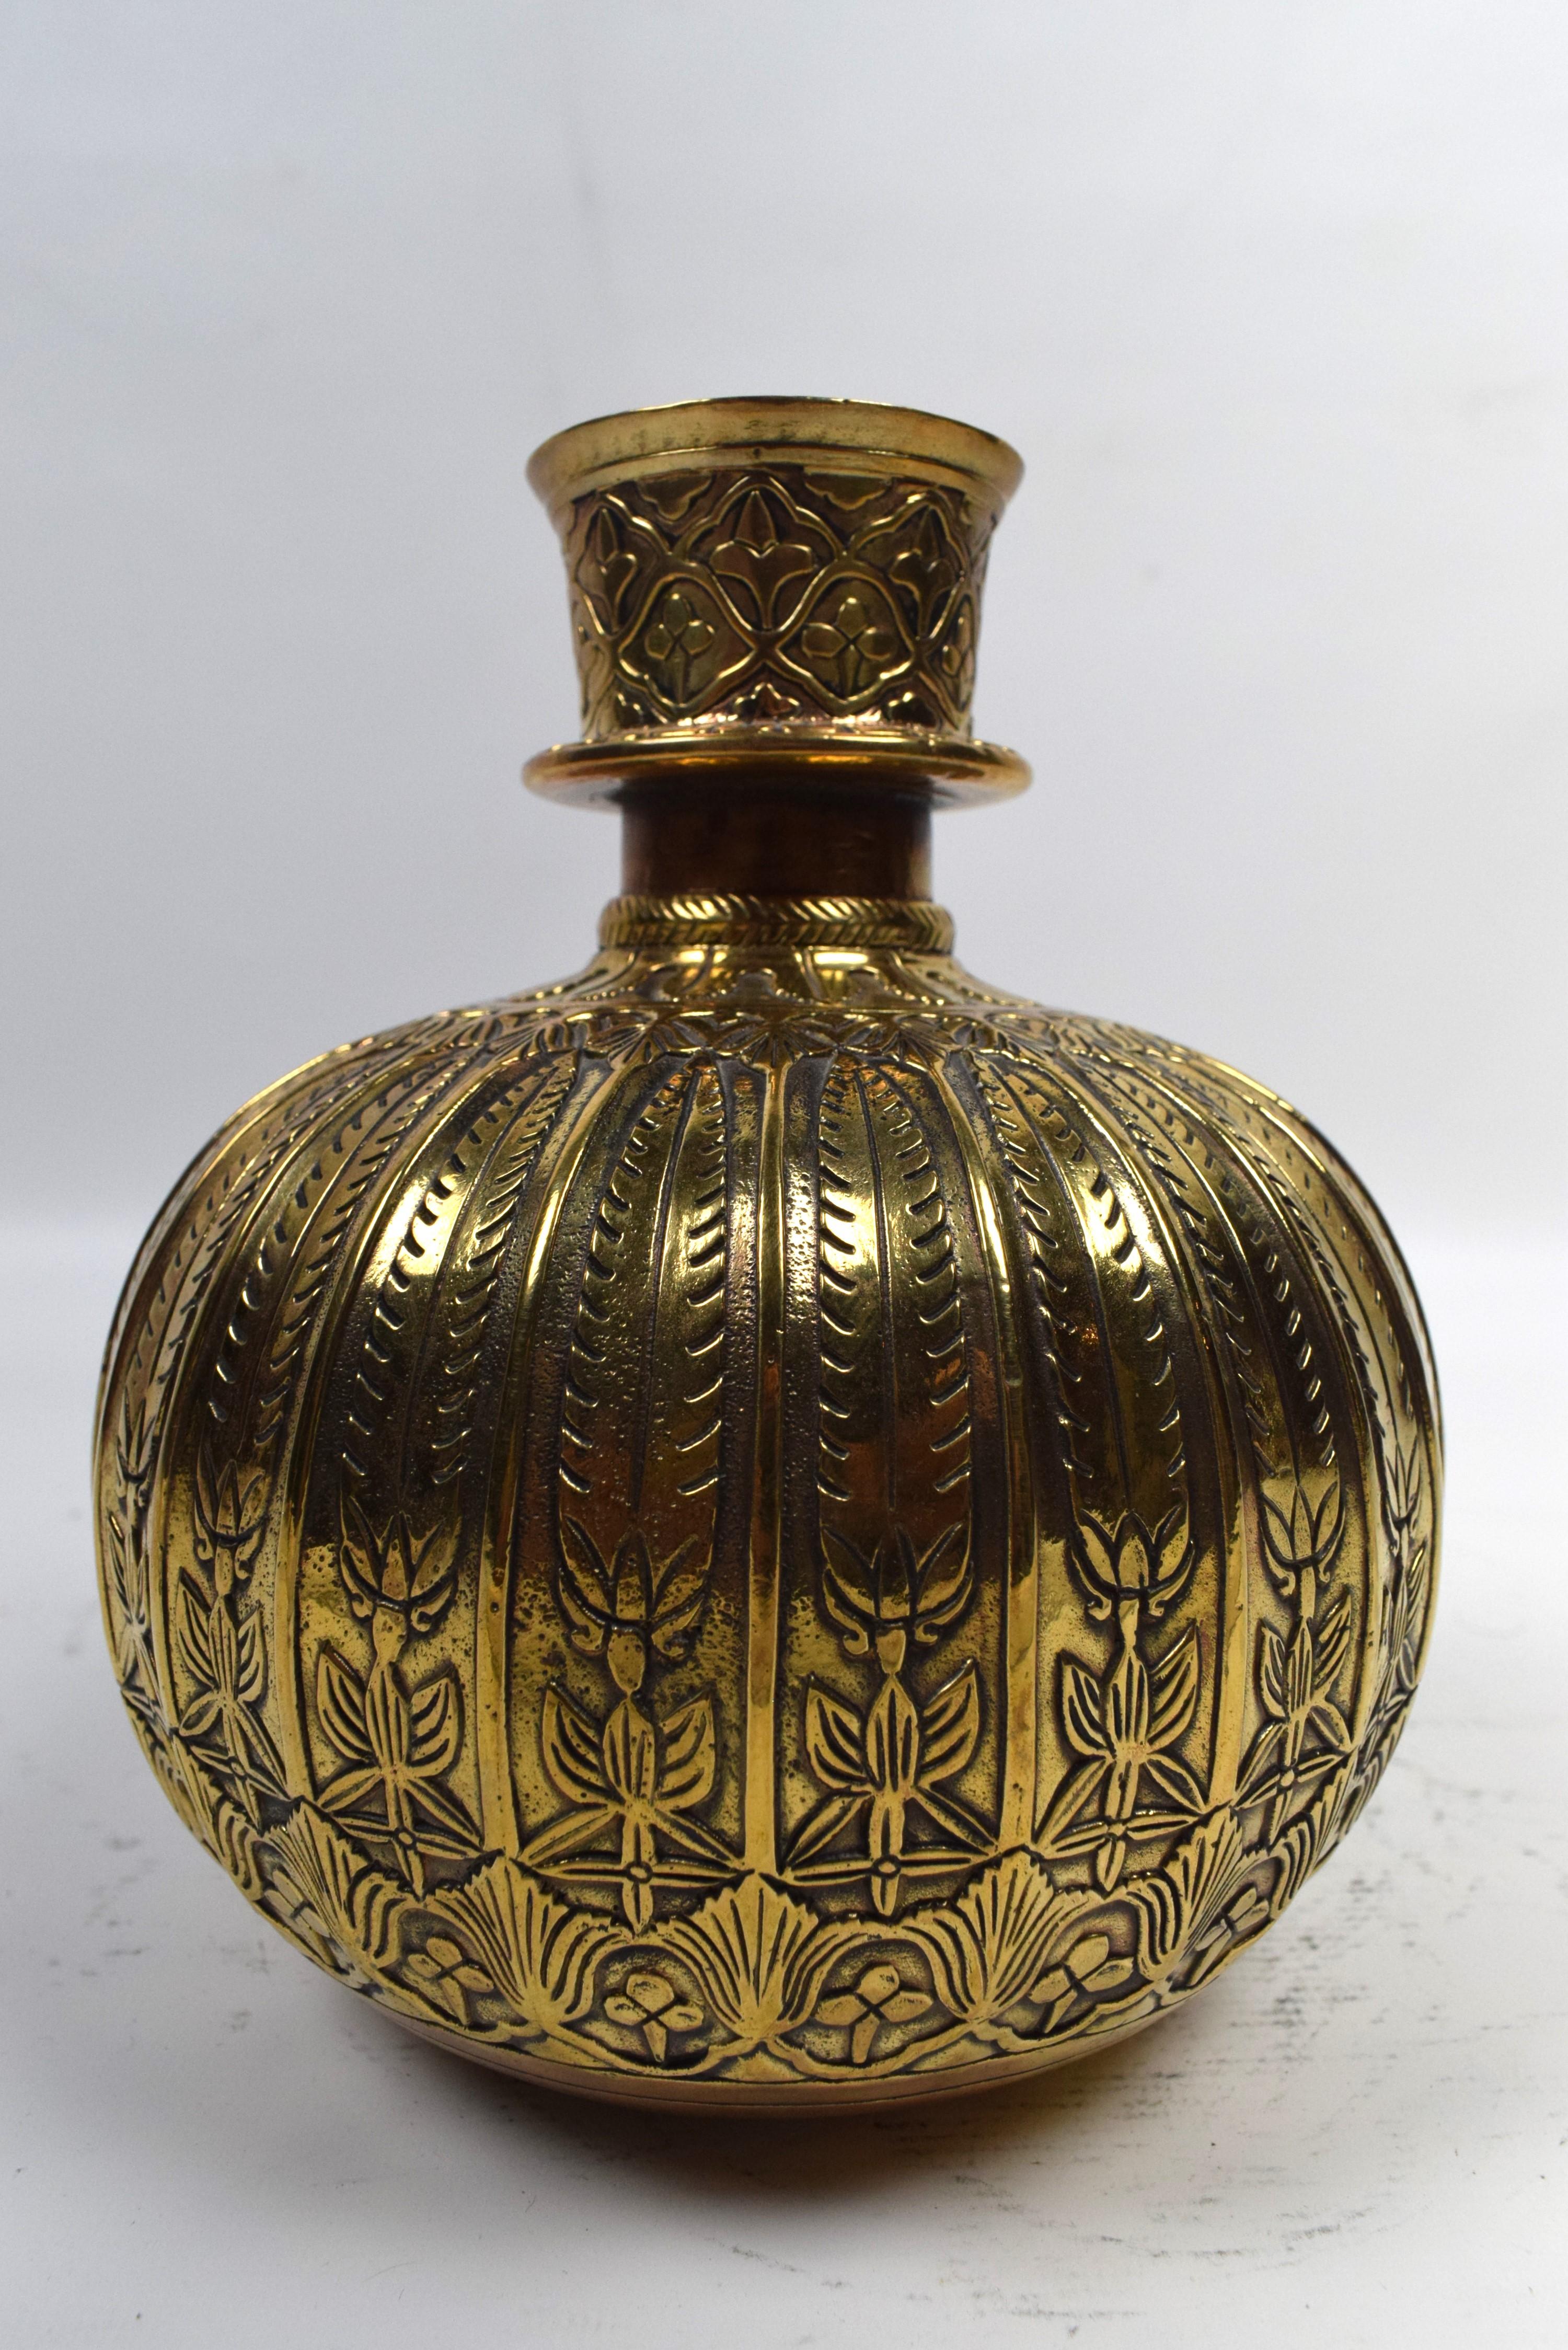 Le narguilé Mughal en laiton est doté d'une base en laiton magnifiquement gravée et ornée de motifs floraux complexes.  motifs géométriques. La base est une œuvre d'art, mettant en valeur l'artisanat exquis et le souci du détail caractéristiques du